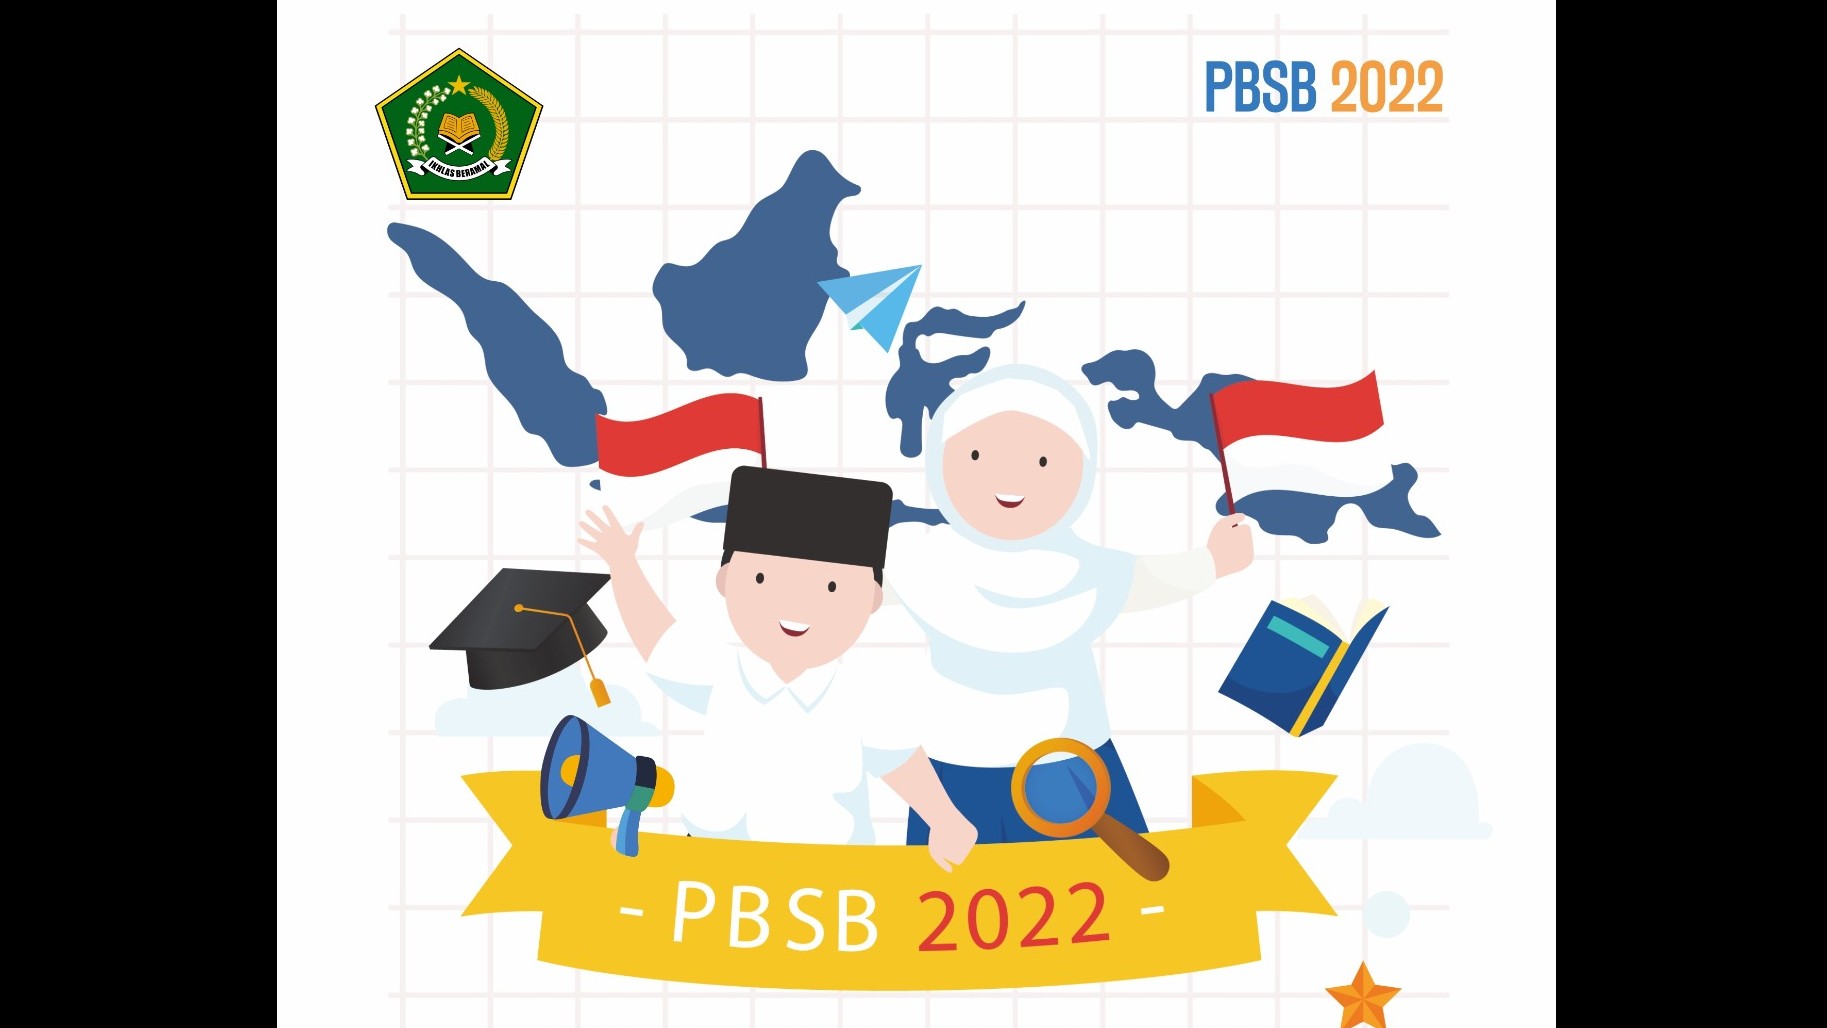 Program Beasiswa Santri Berprestasi tahun 2022